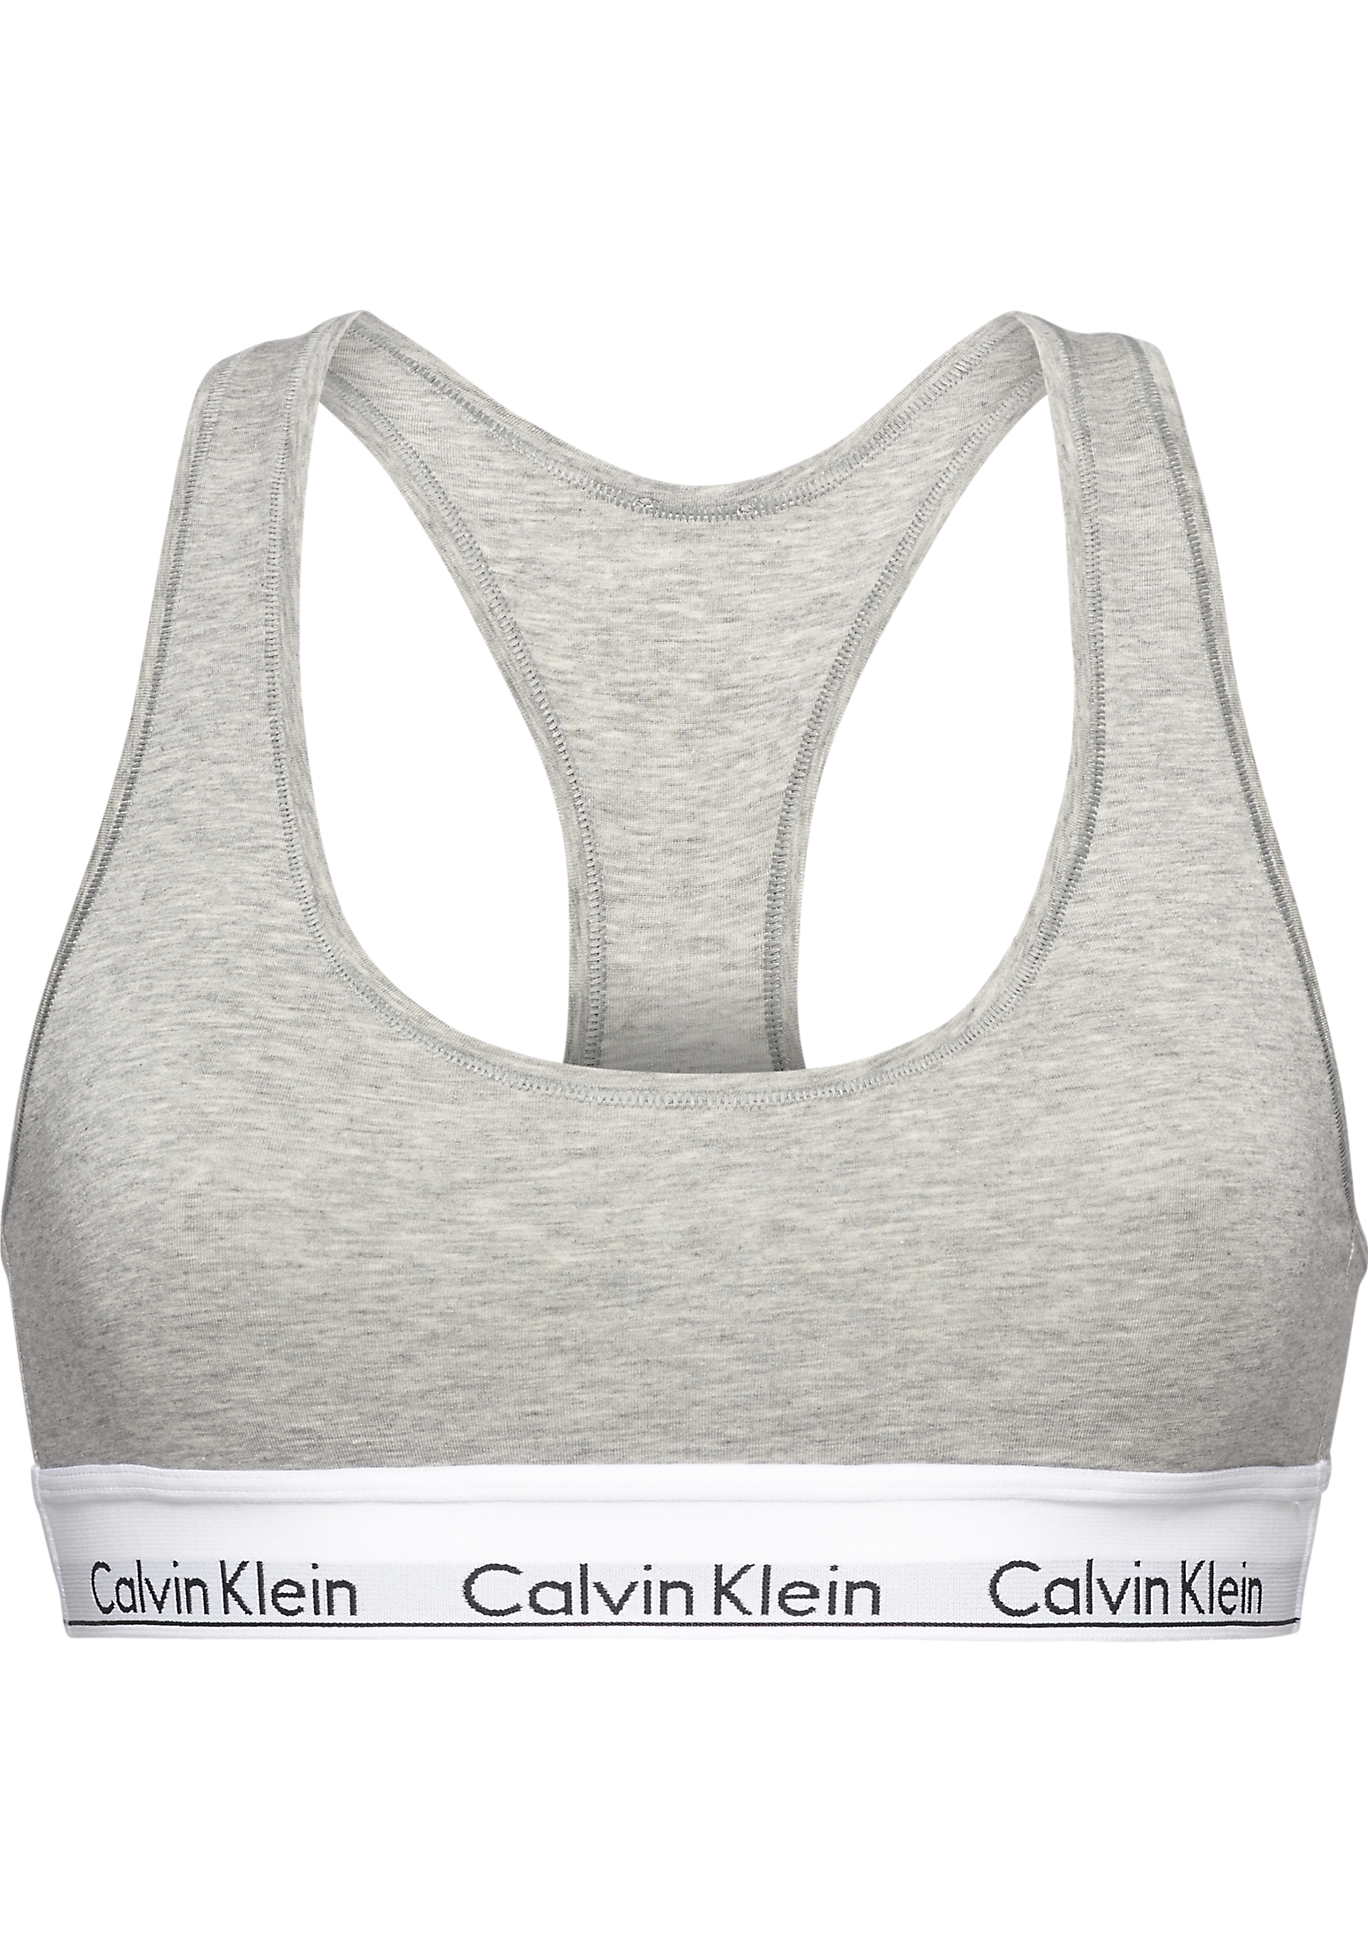 Calvin Klein dames Modern Cotton bralette top, ongevoerd, grijs